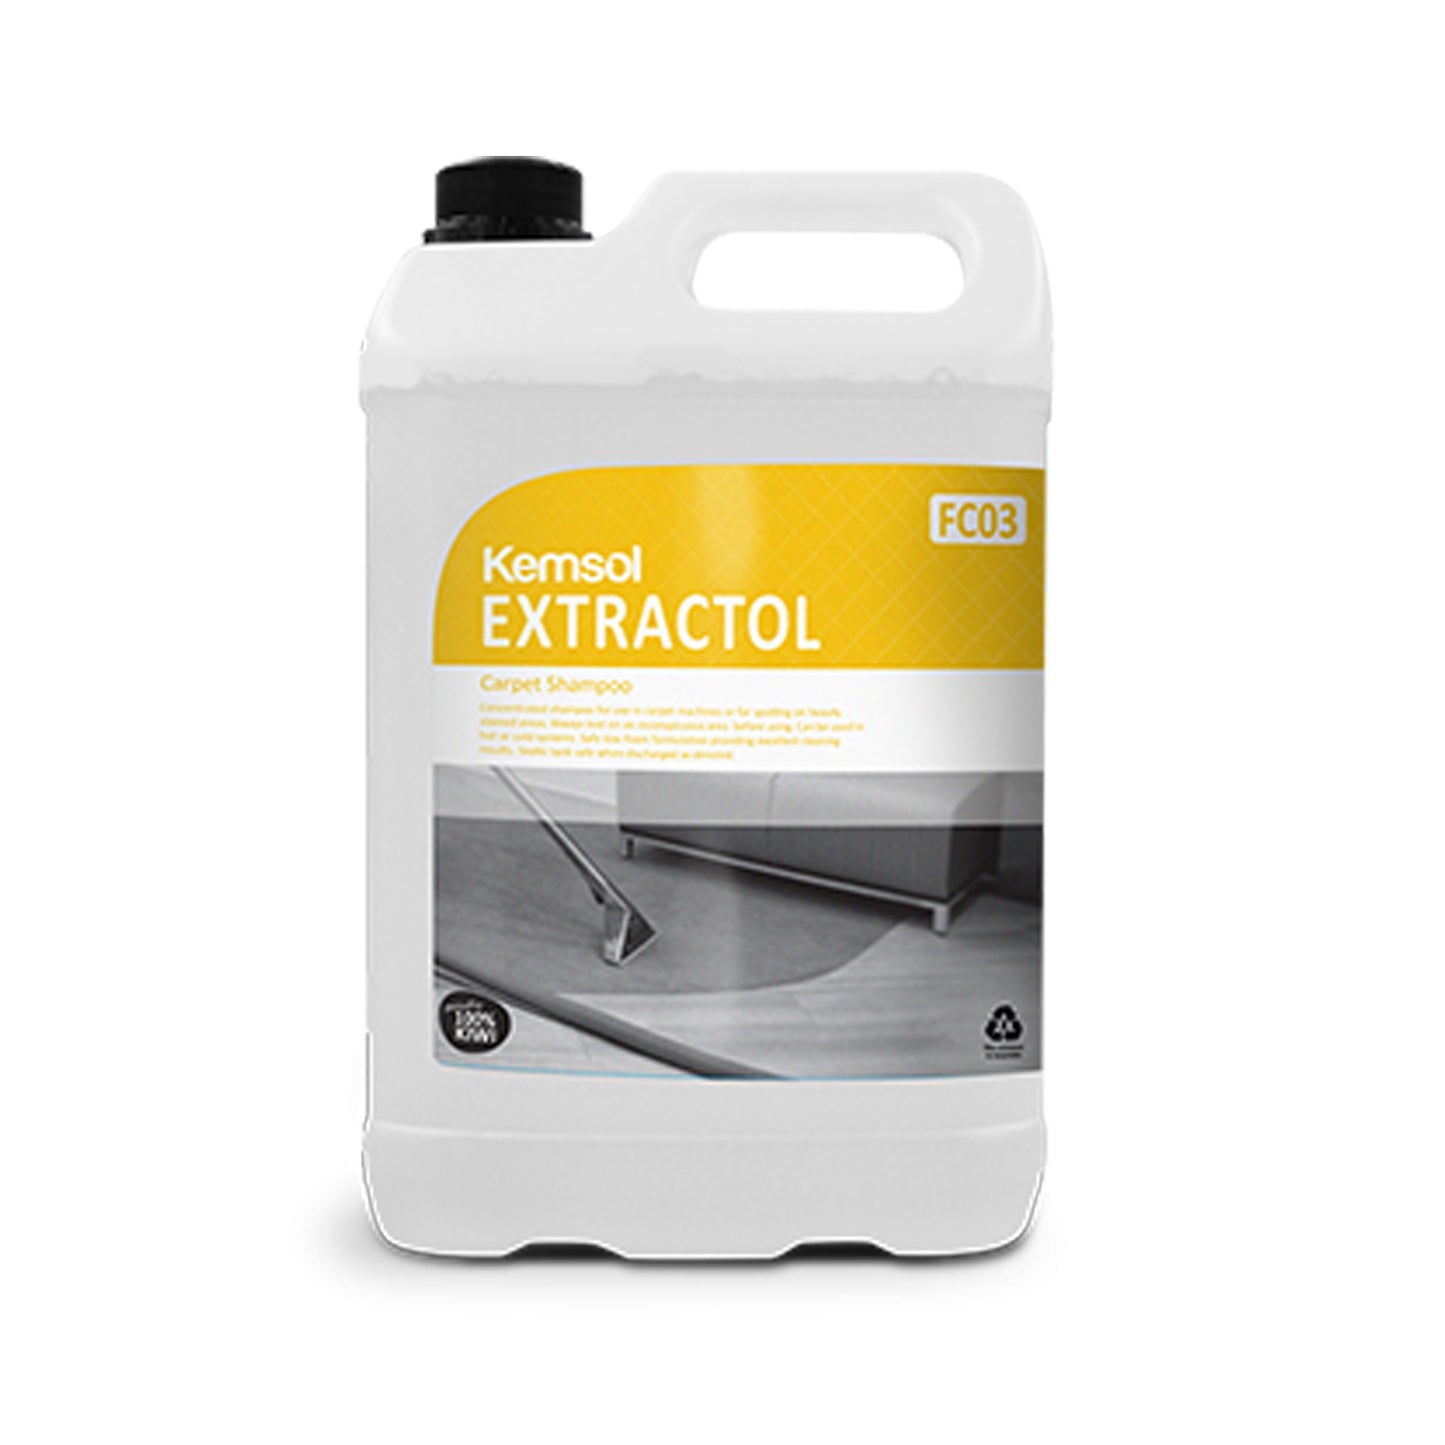 Extractol Carpet Shampoo - 5 Litre